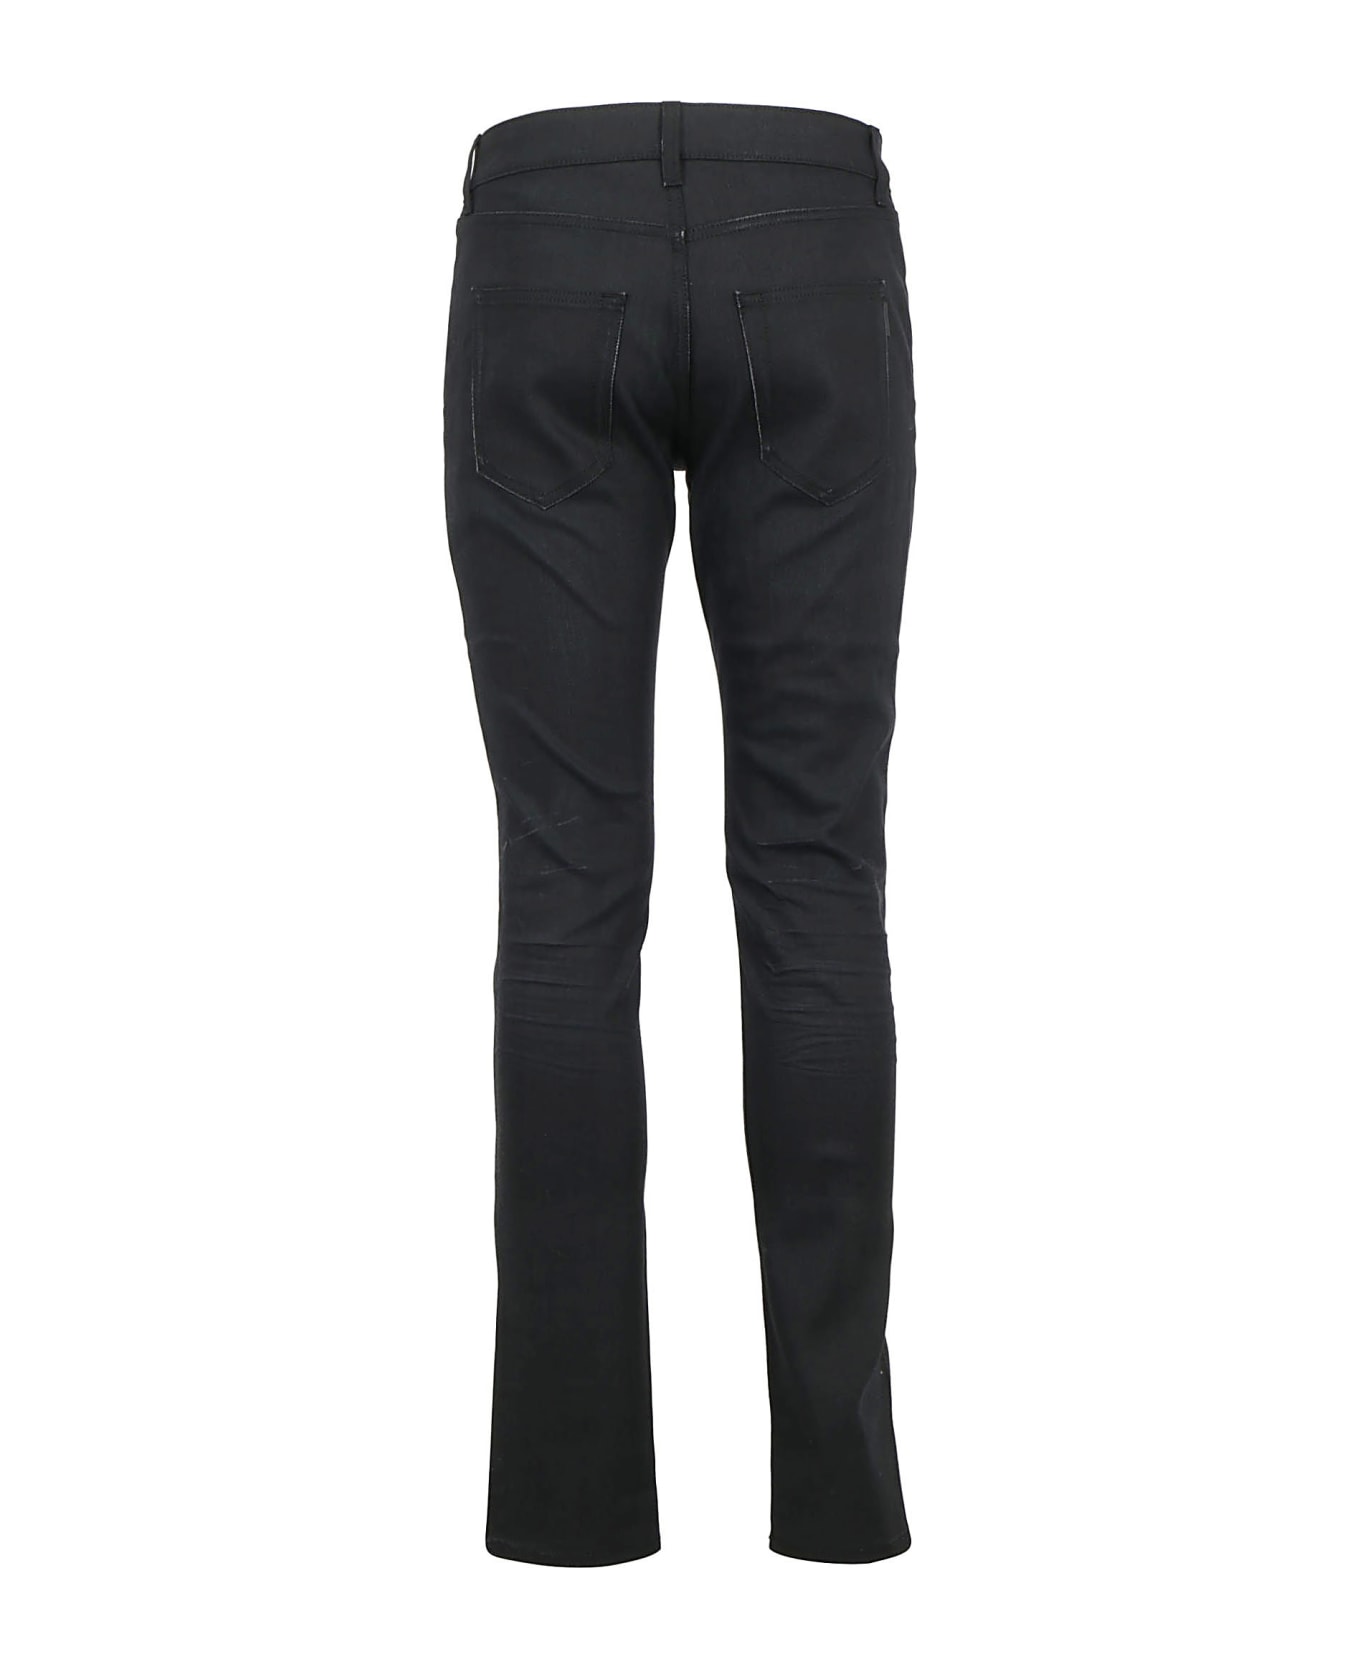 Saint Laurent Jeans - Used Black